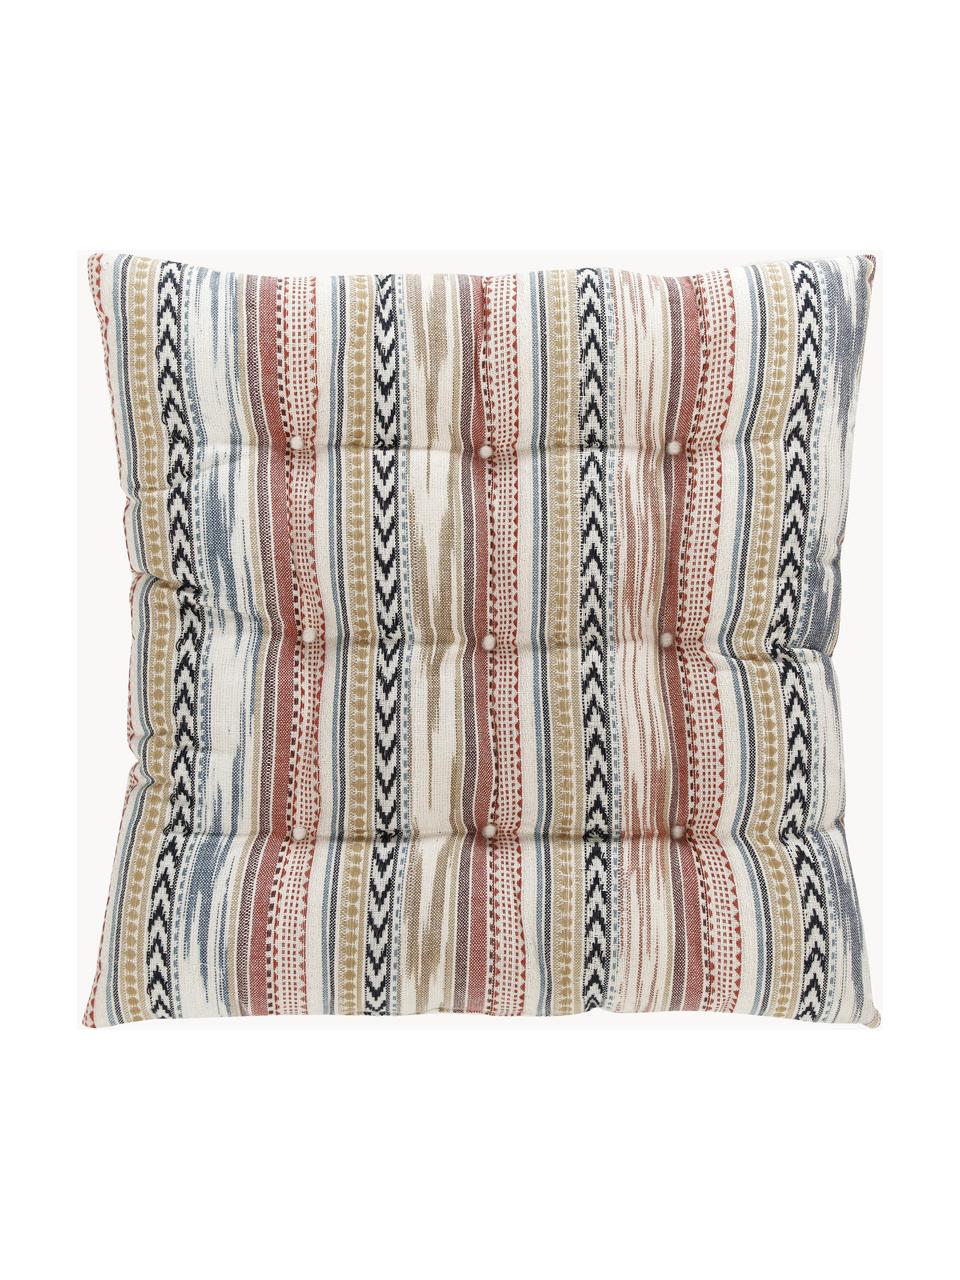 Cuscino sedia in cotone in stile etnico Maja, Rivestimento: 100% cotone, Beige, multicolore, Larg. 40 x Lung. 40 cm